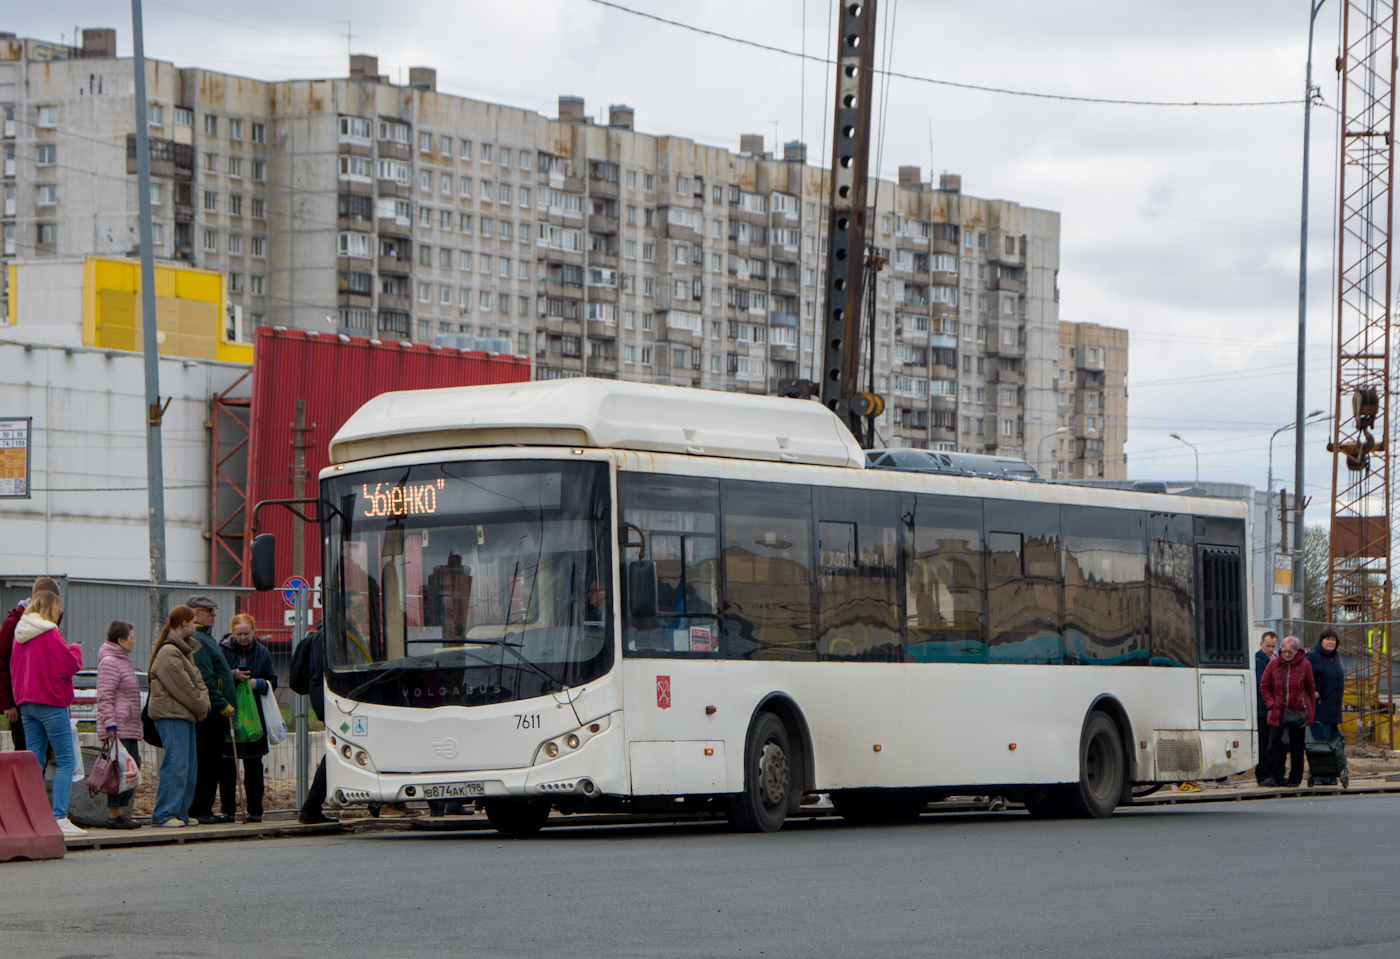 Sankt Petersburg, Volgabus-5270.G0 Nr 7611